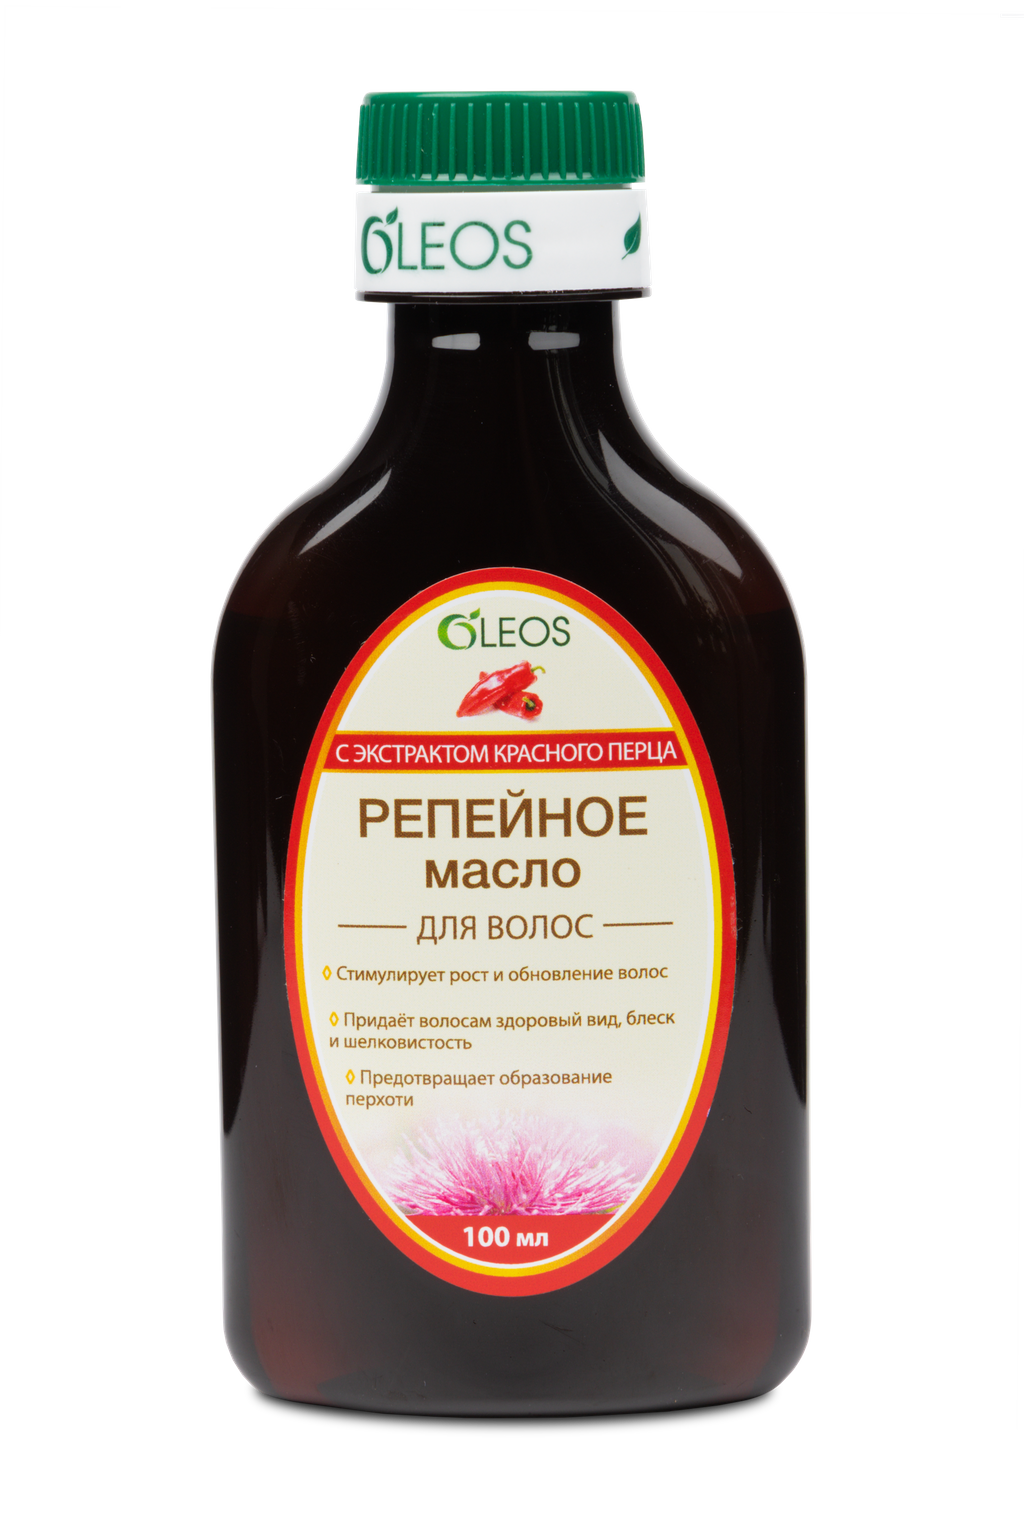 Oleos Масло репейное с экстрактом красного перца, масло косметическое, 100 мл, 1 шт.